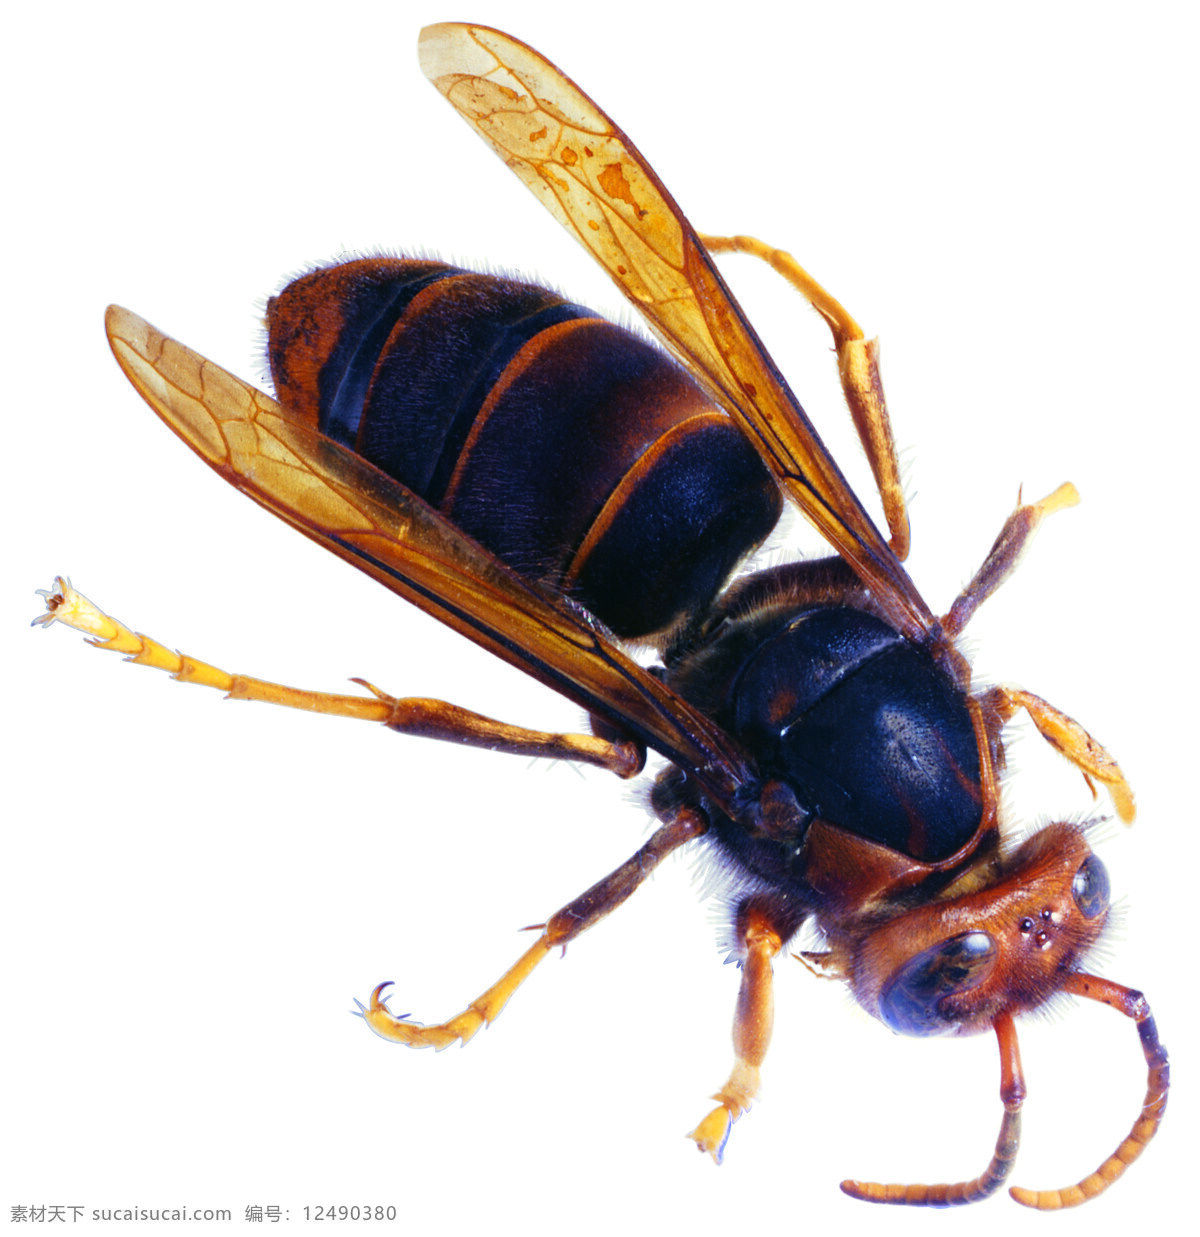 大黄蜂 黄蜂 蜜蜂 翅膀 昆虫 生物世界